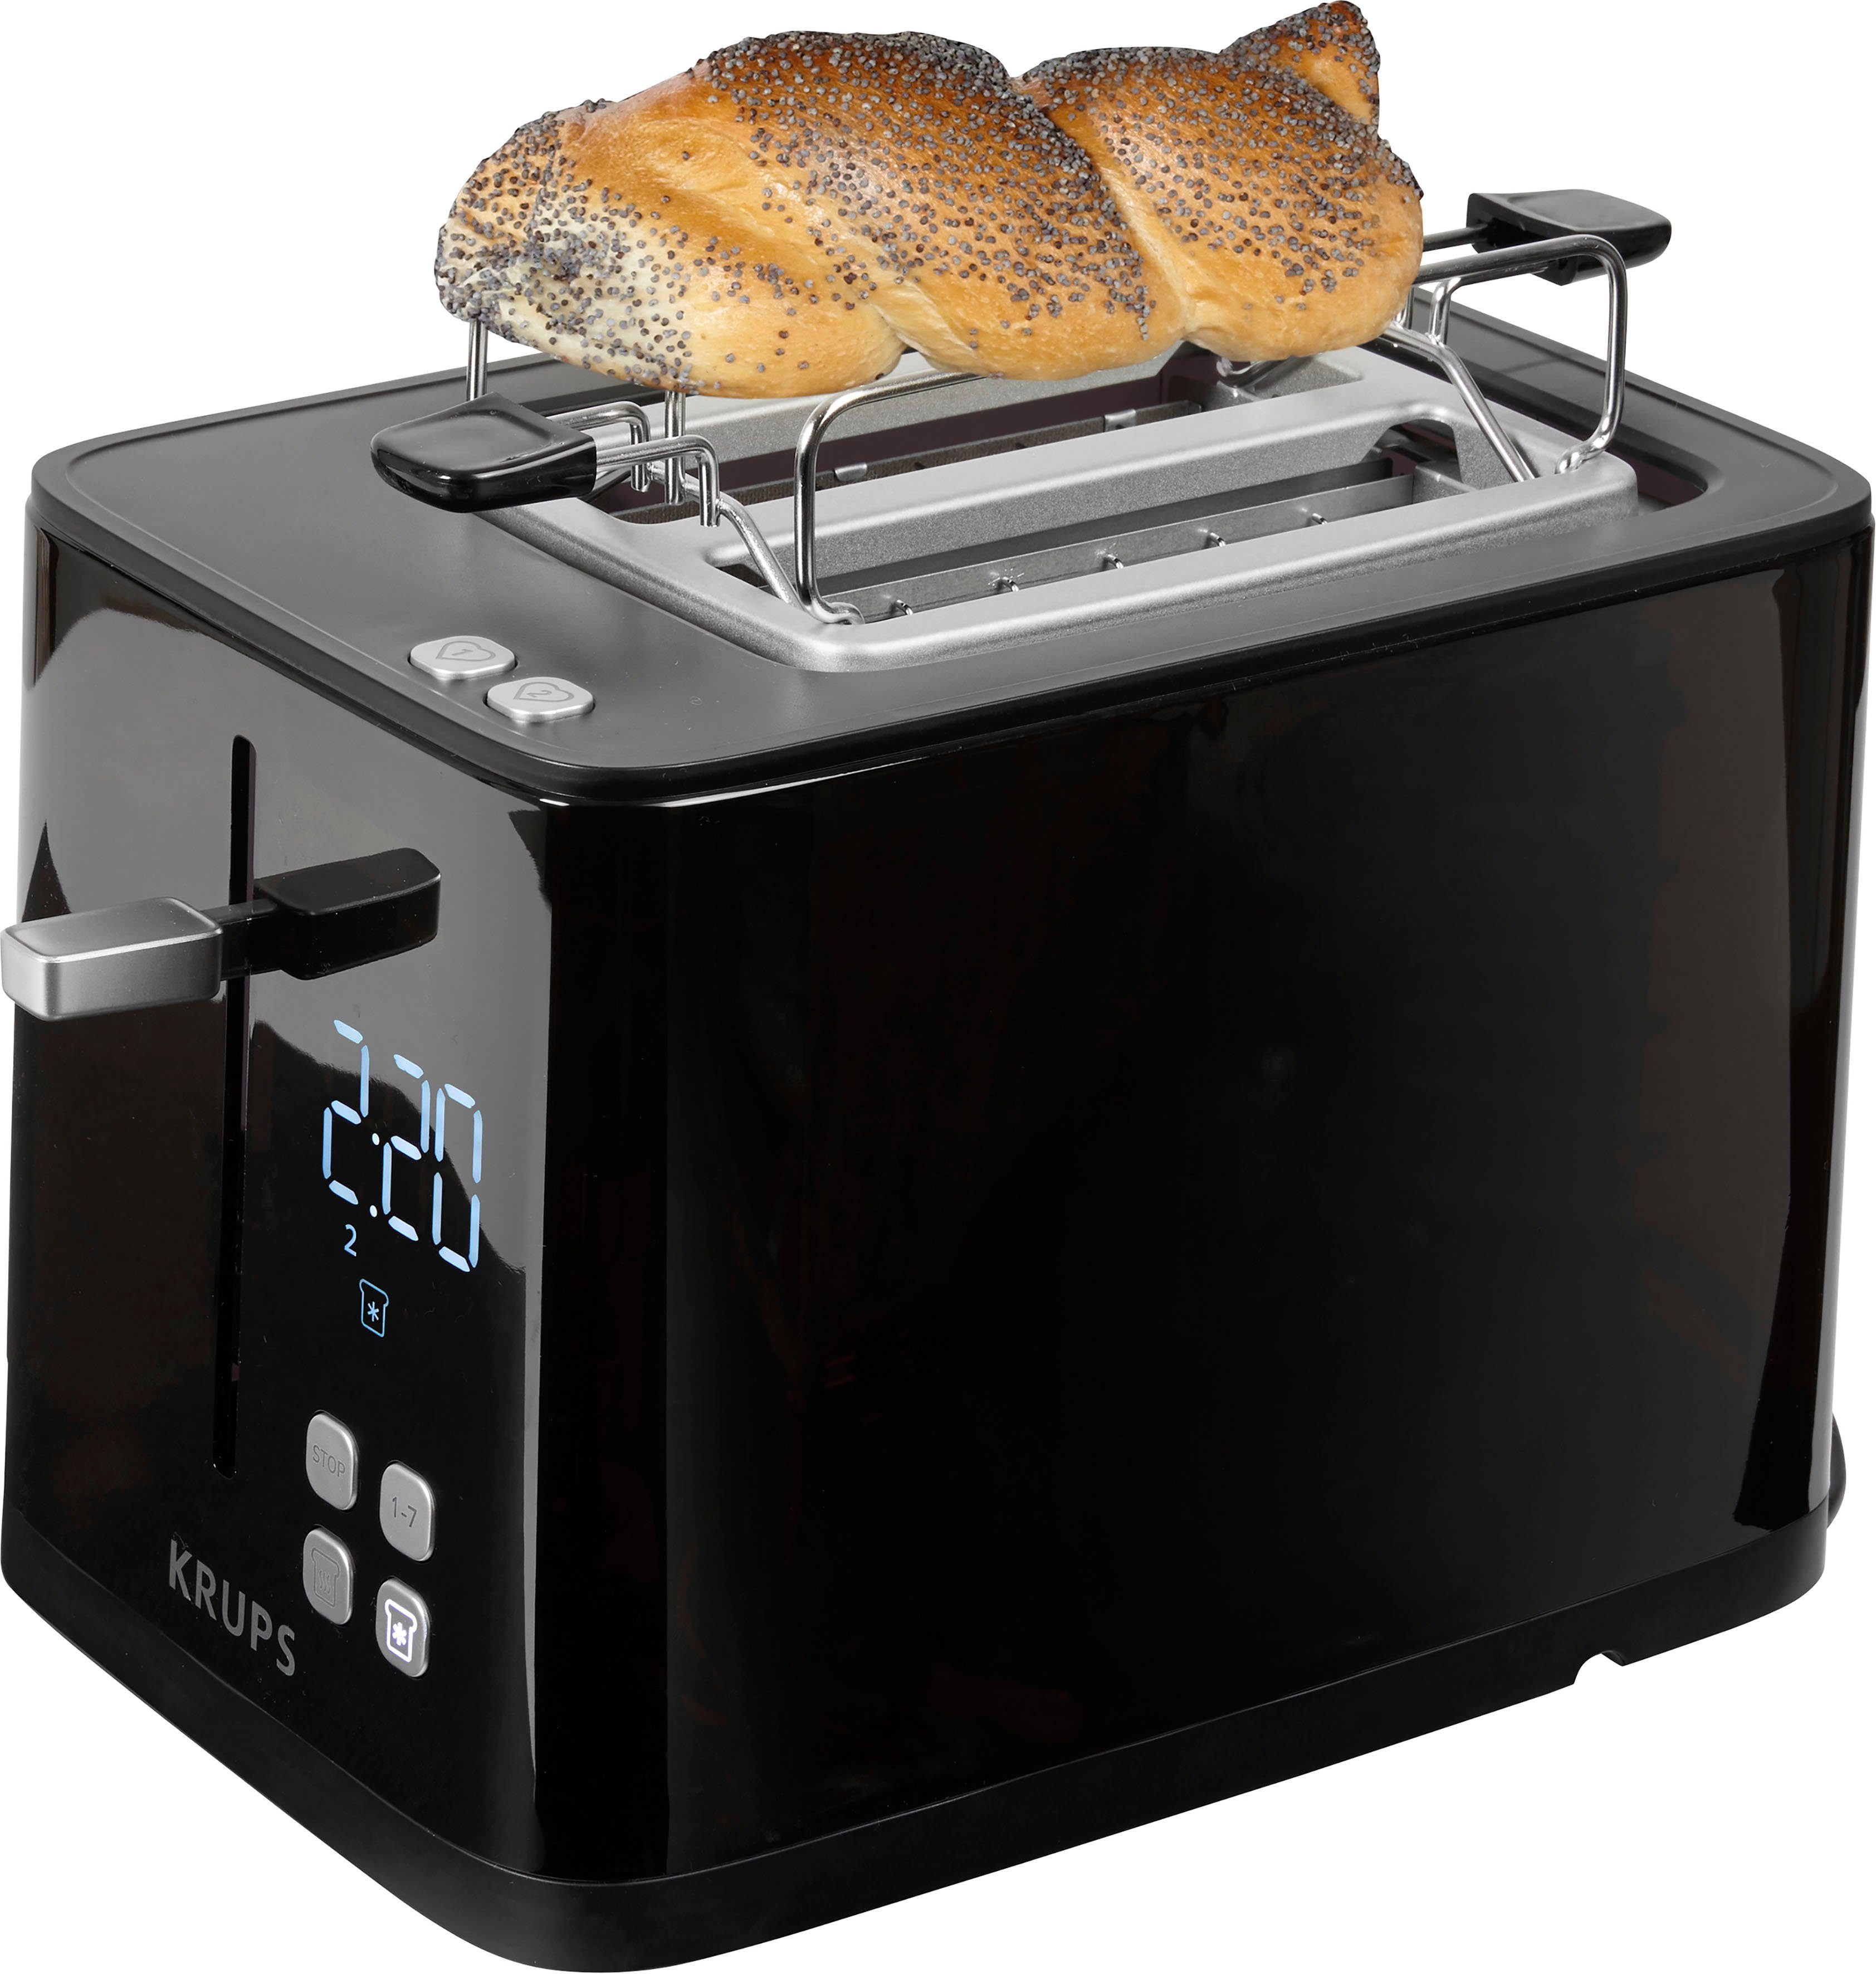 Krups Toaster KH6418 Smart'n Light, 2 kurze Schlitze, 800 W, Digitaldisplay, 7 Bräunungsstufen, automatische Zentrierung des Brots